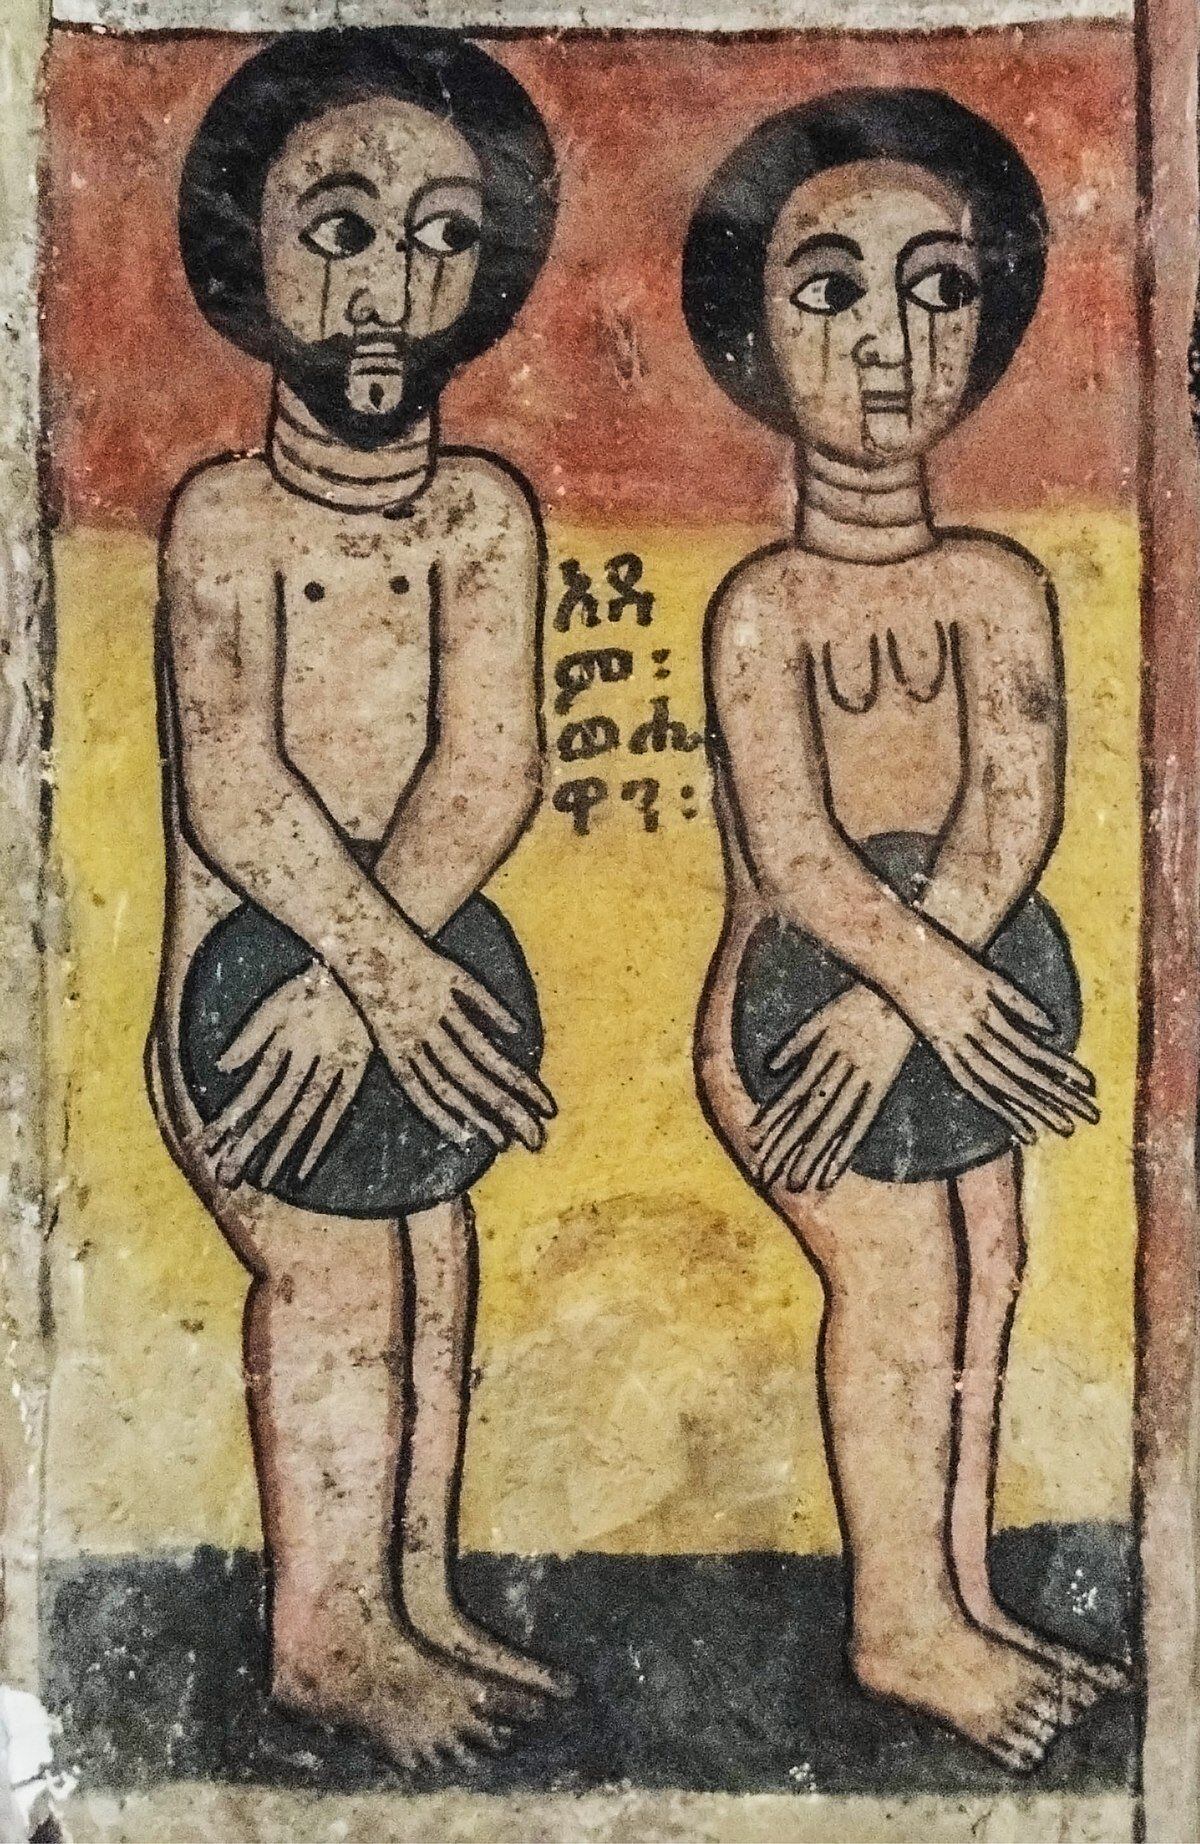 Adão e Eva. Mural da igreja de Abreha We Atsbeha (Etiópia).